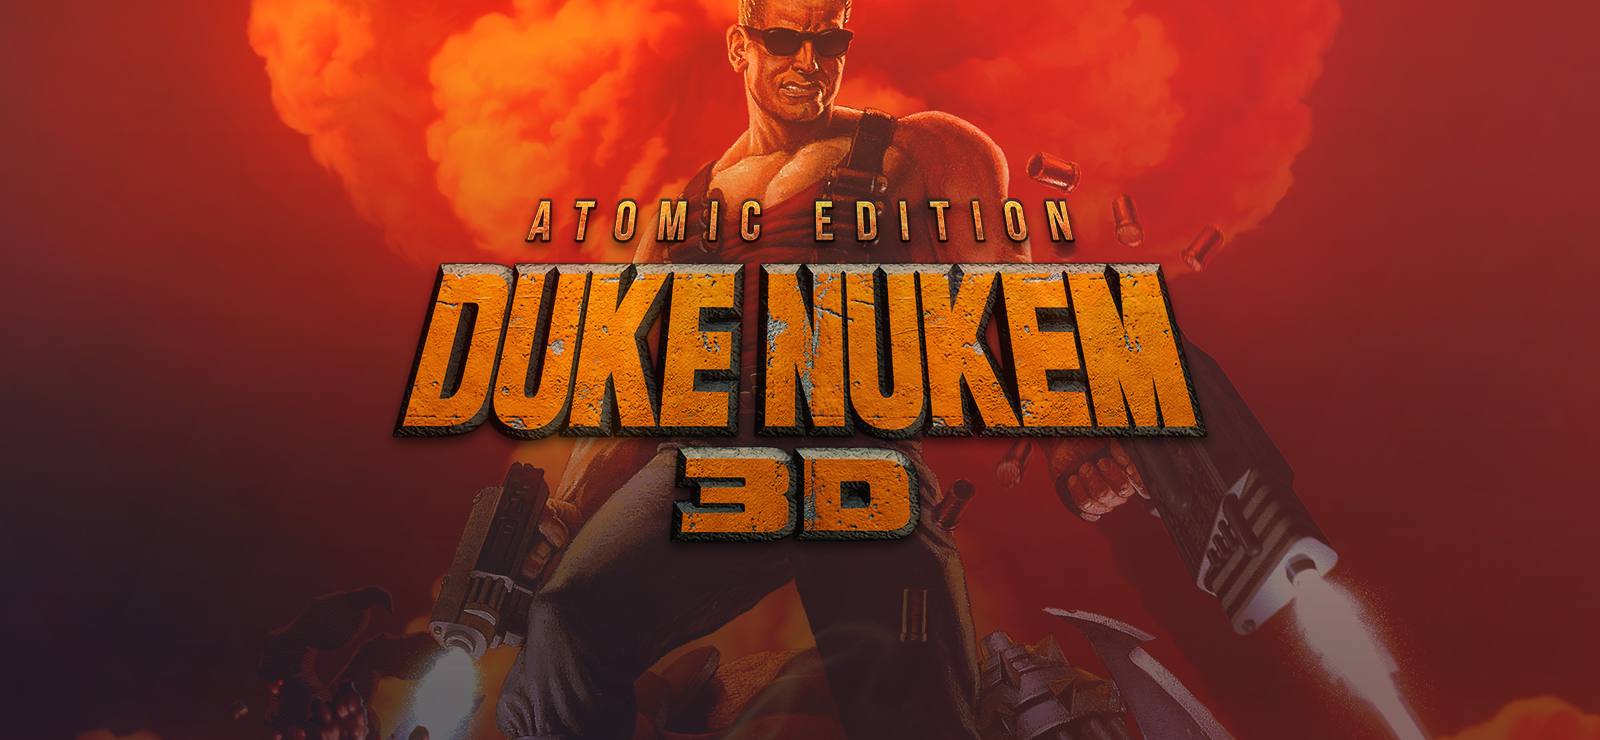 Duke Nukem 3D Atomic Edition